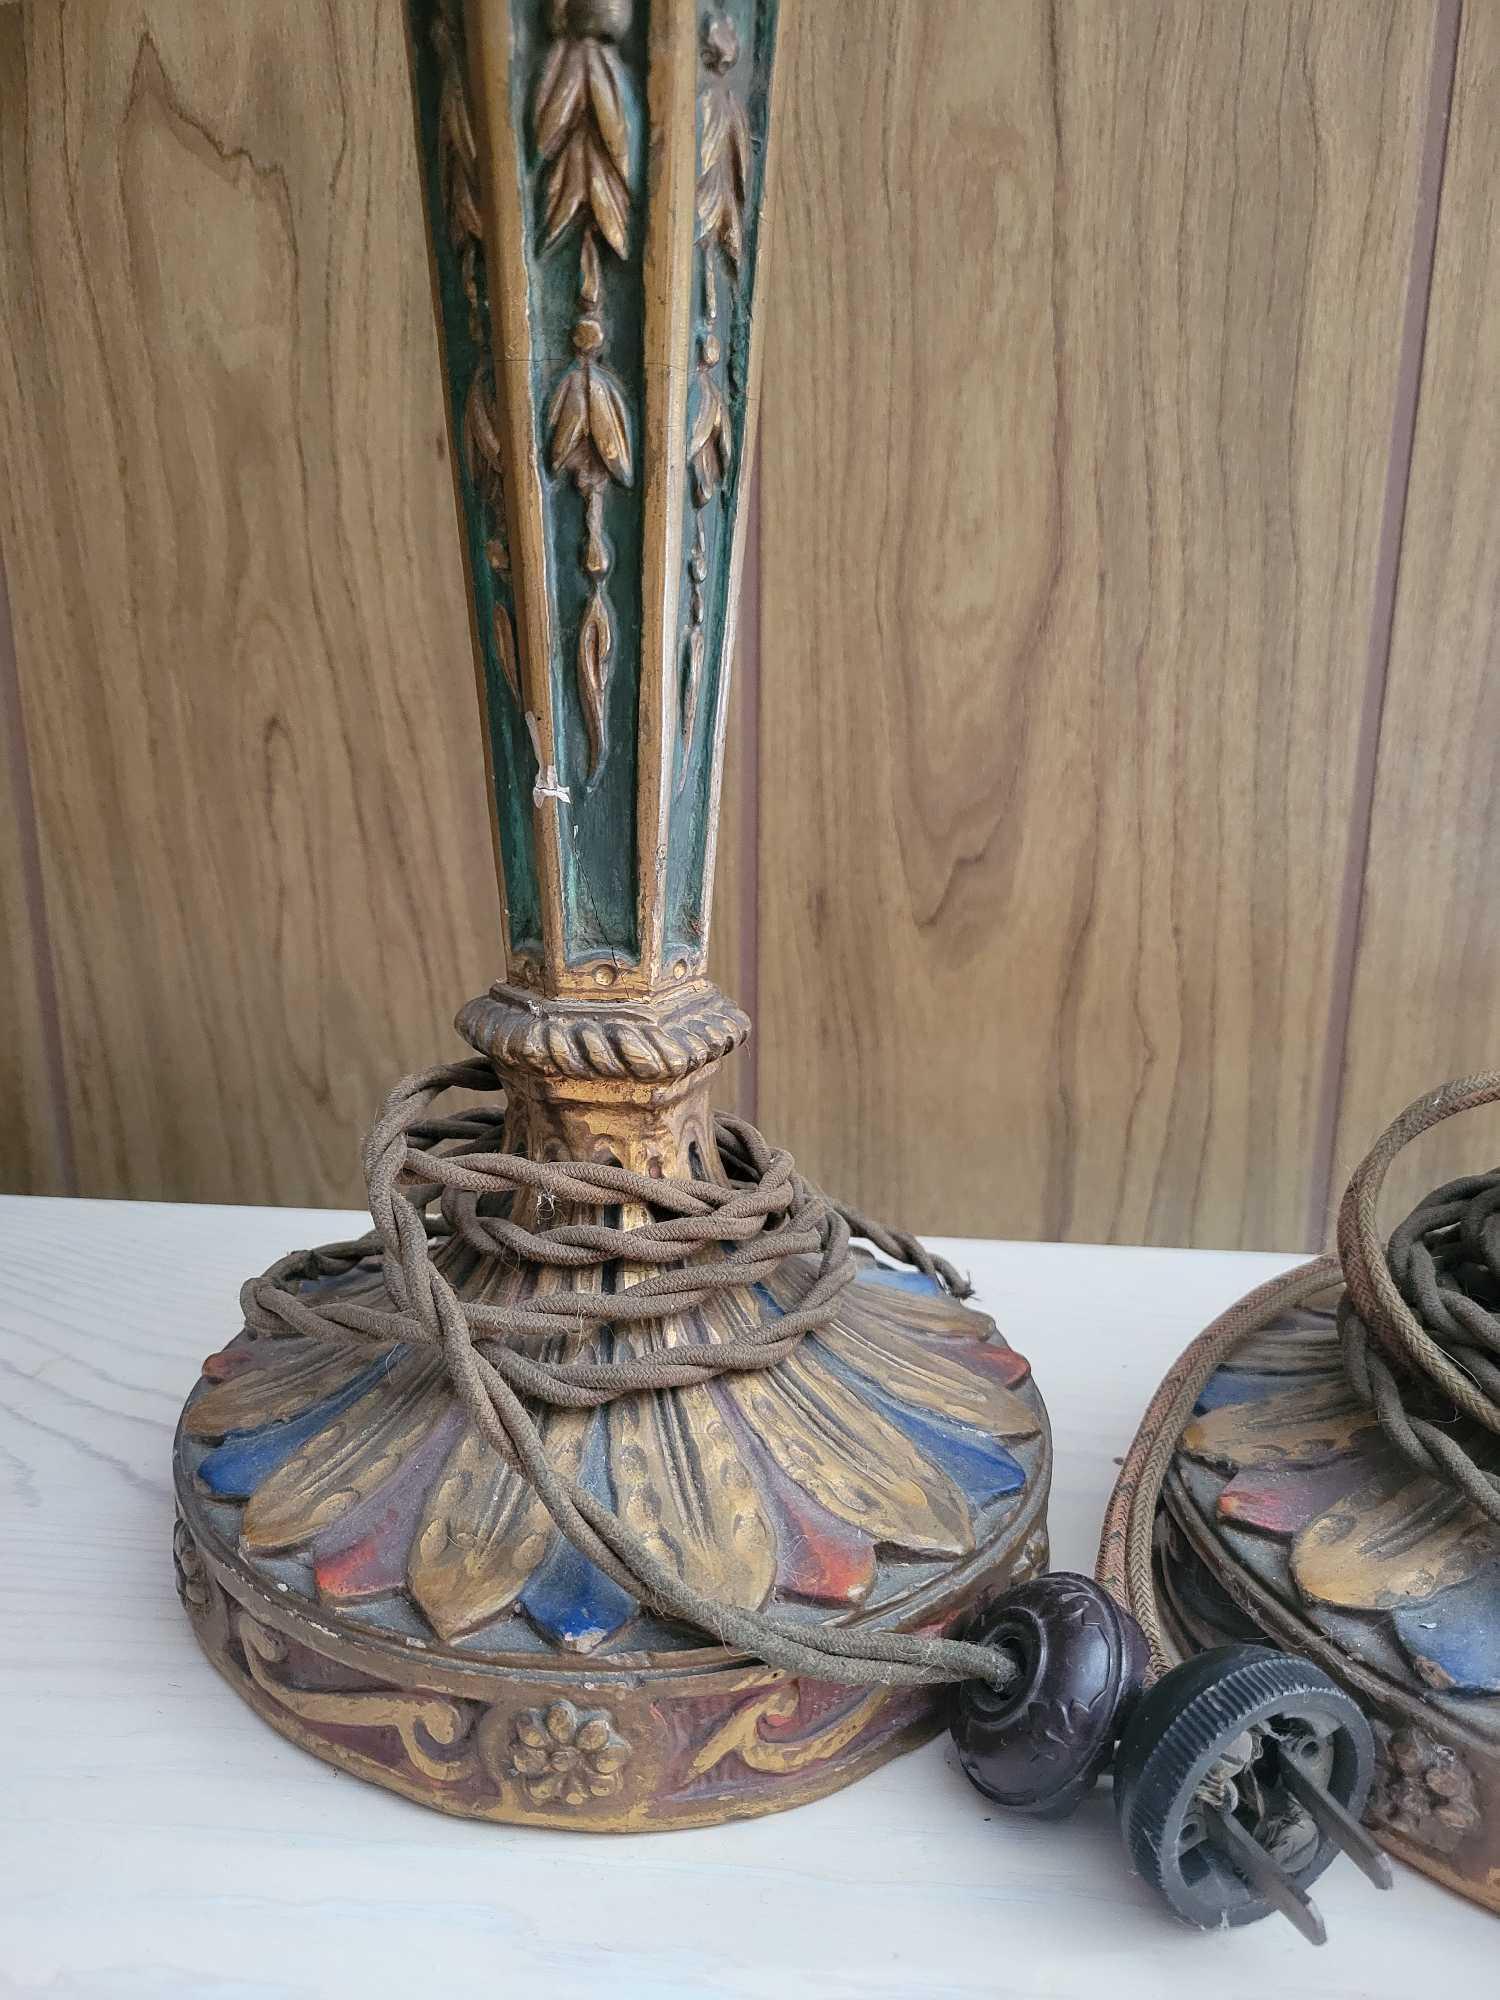 (2) Vintage Lamps